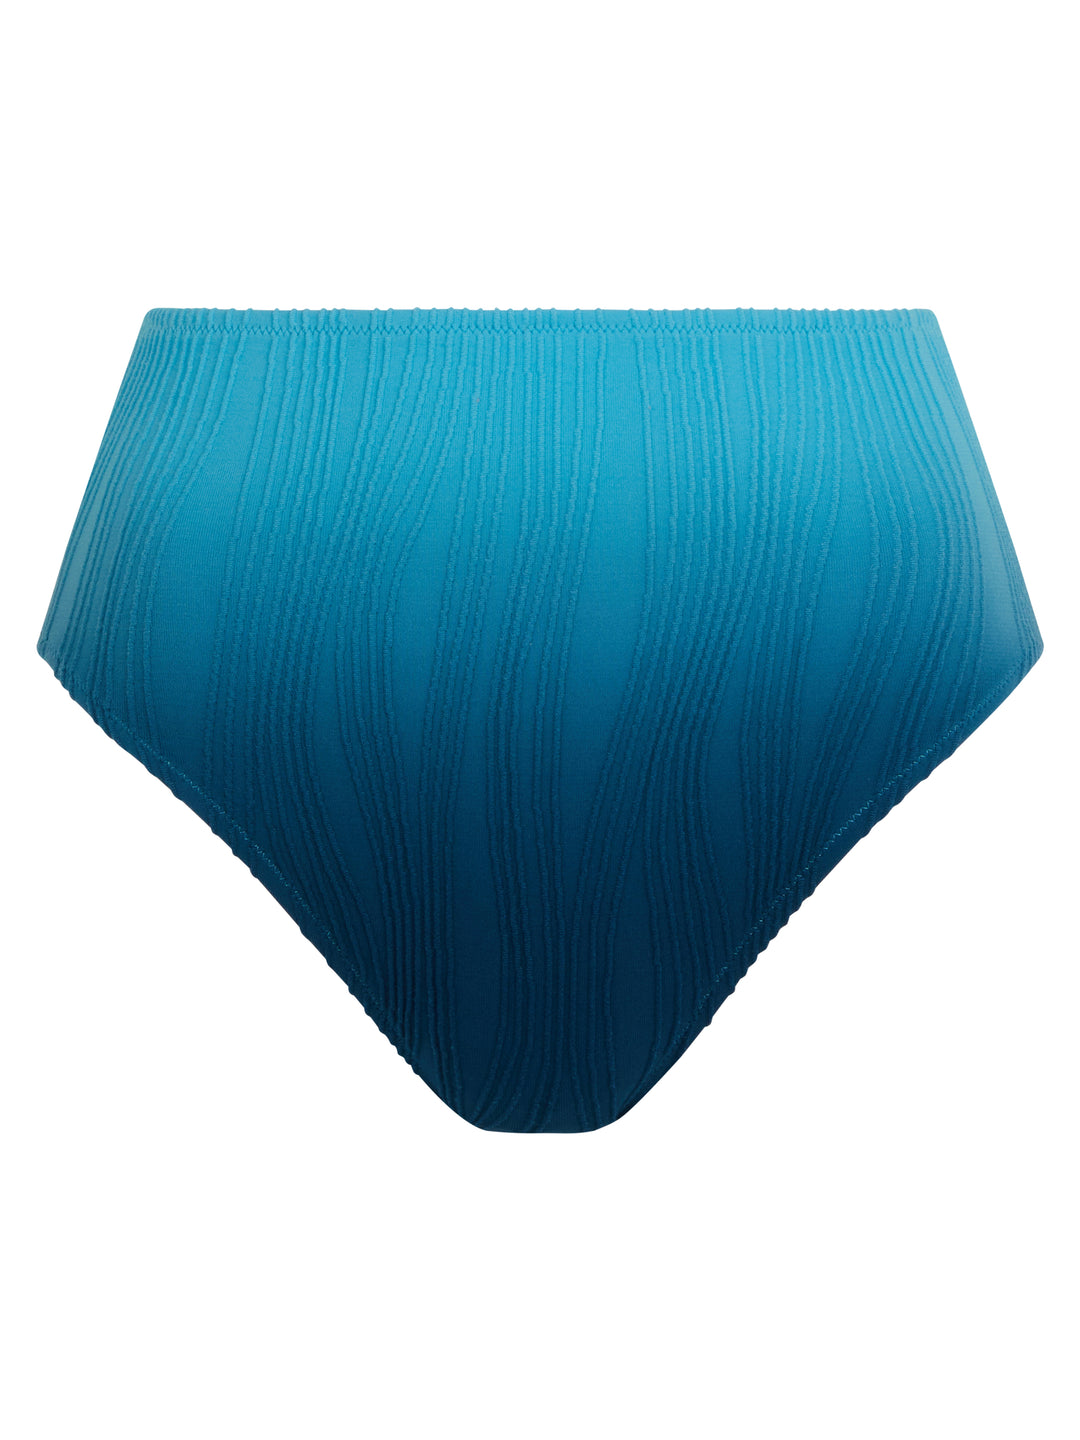 Costumi da bagno Chantelle - Swim Slip intero taglia unica Cravatta blu e tinta